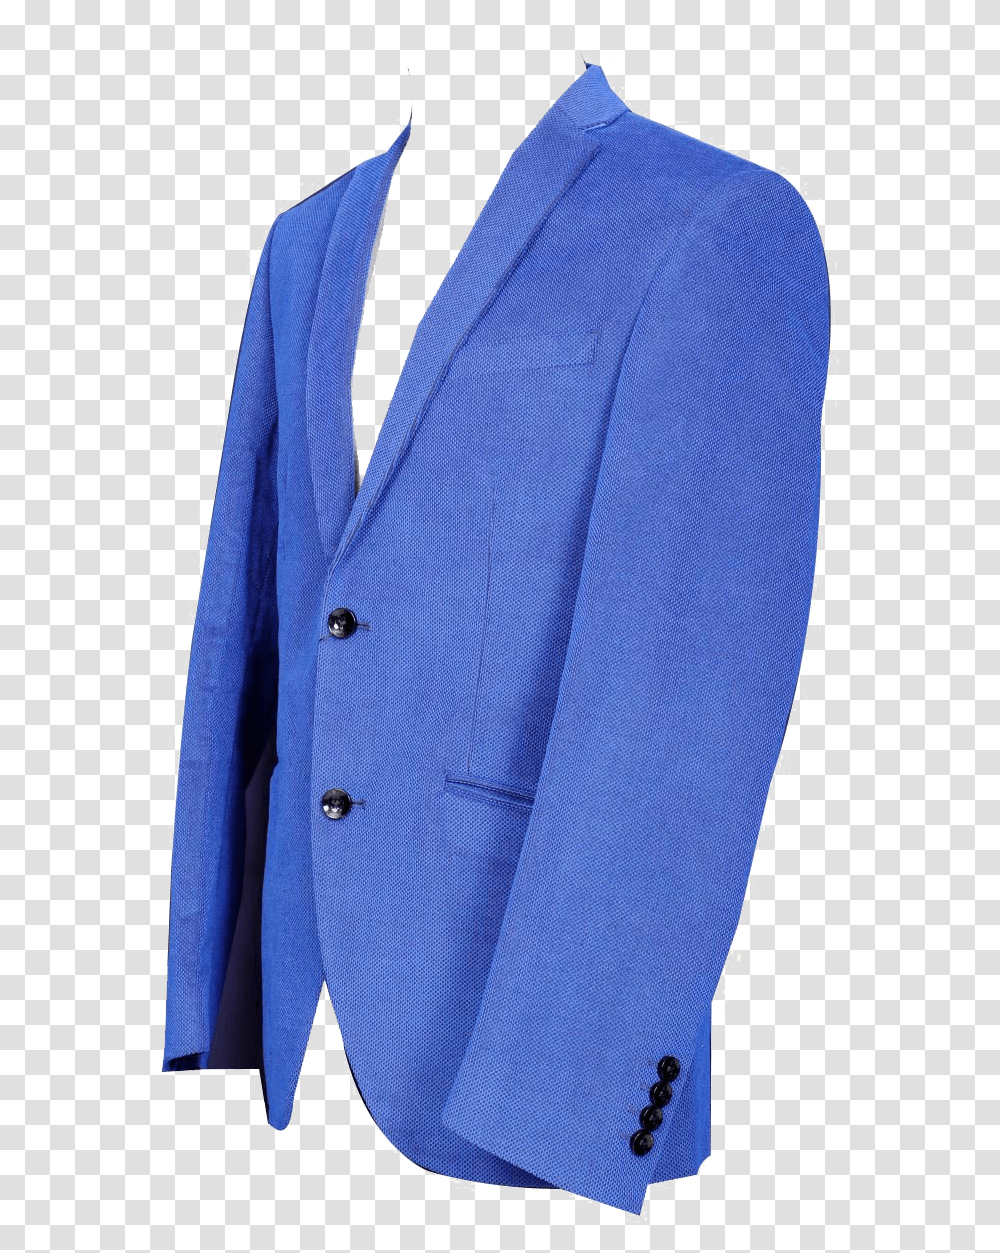 Blue Blazer For Men Image File Formal Wear, Jacket, Coat, Shirt Transparent Png